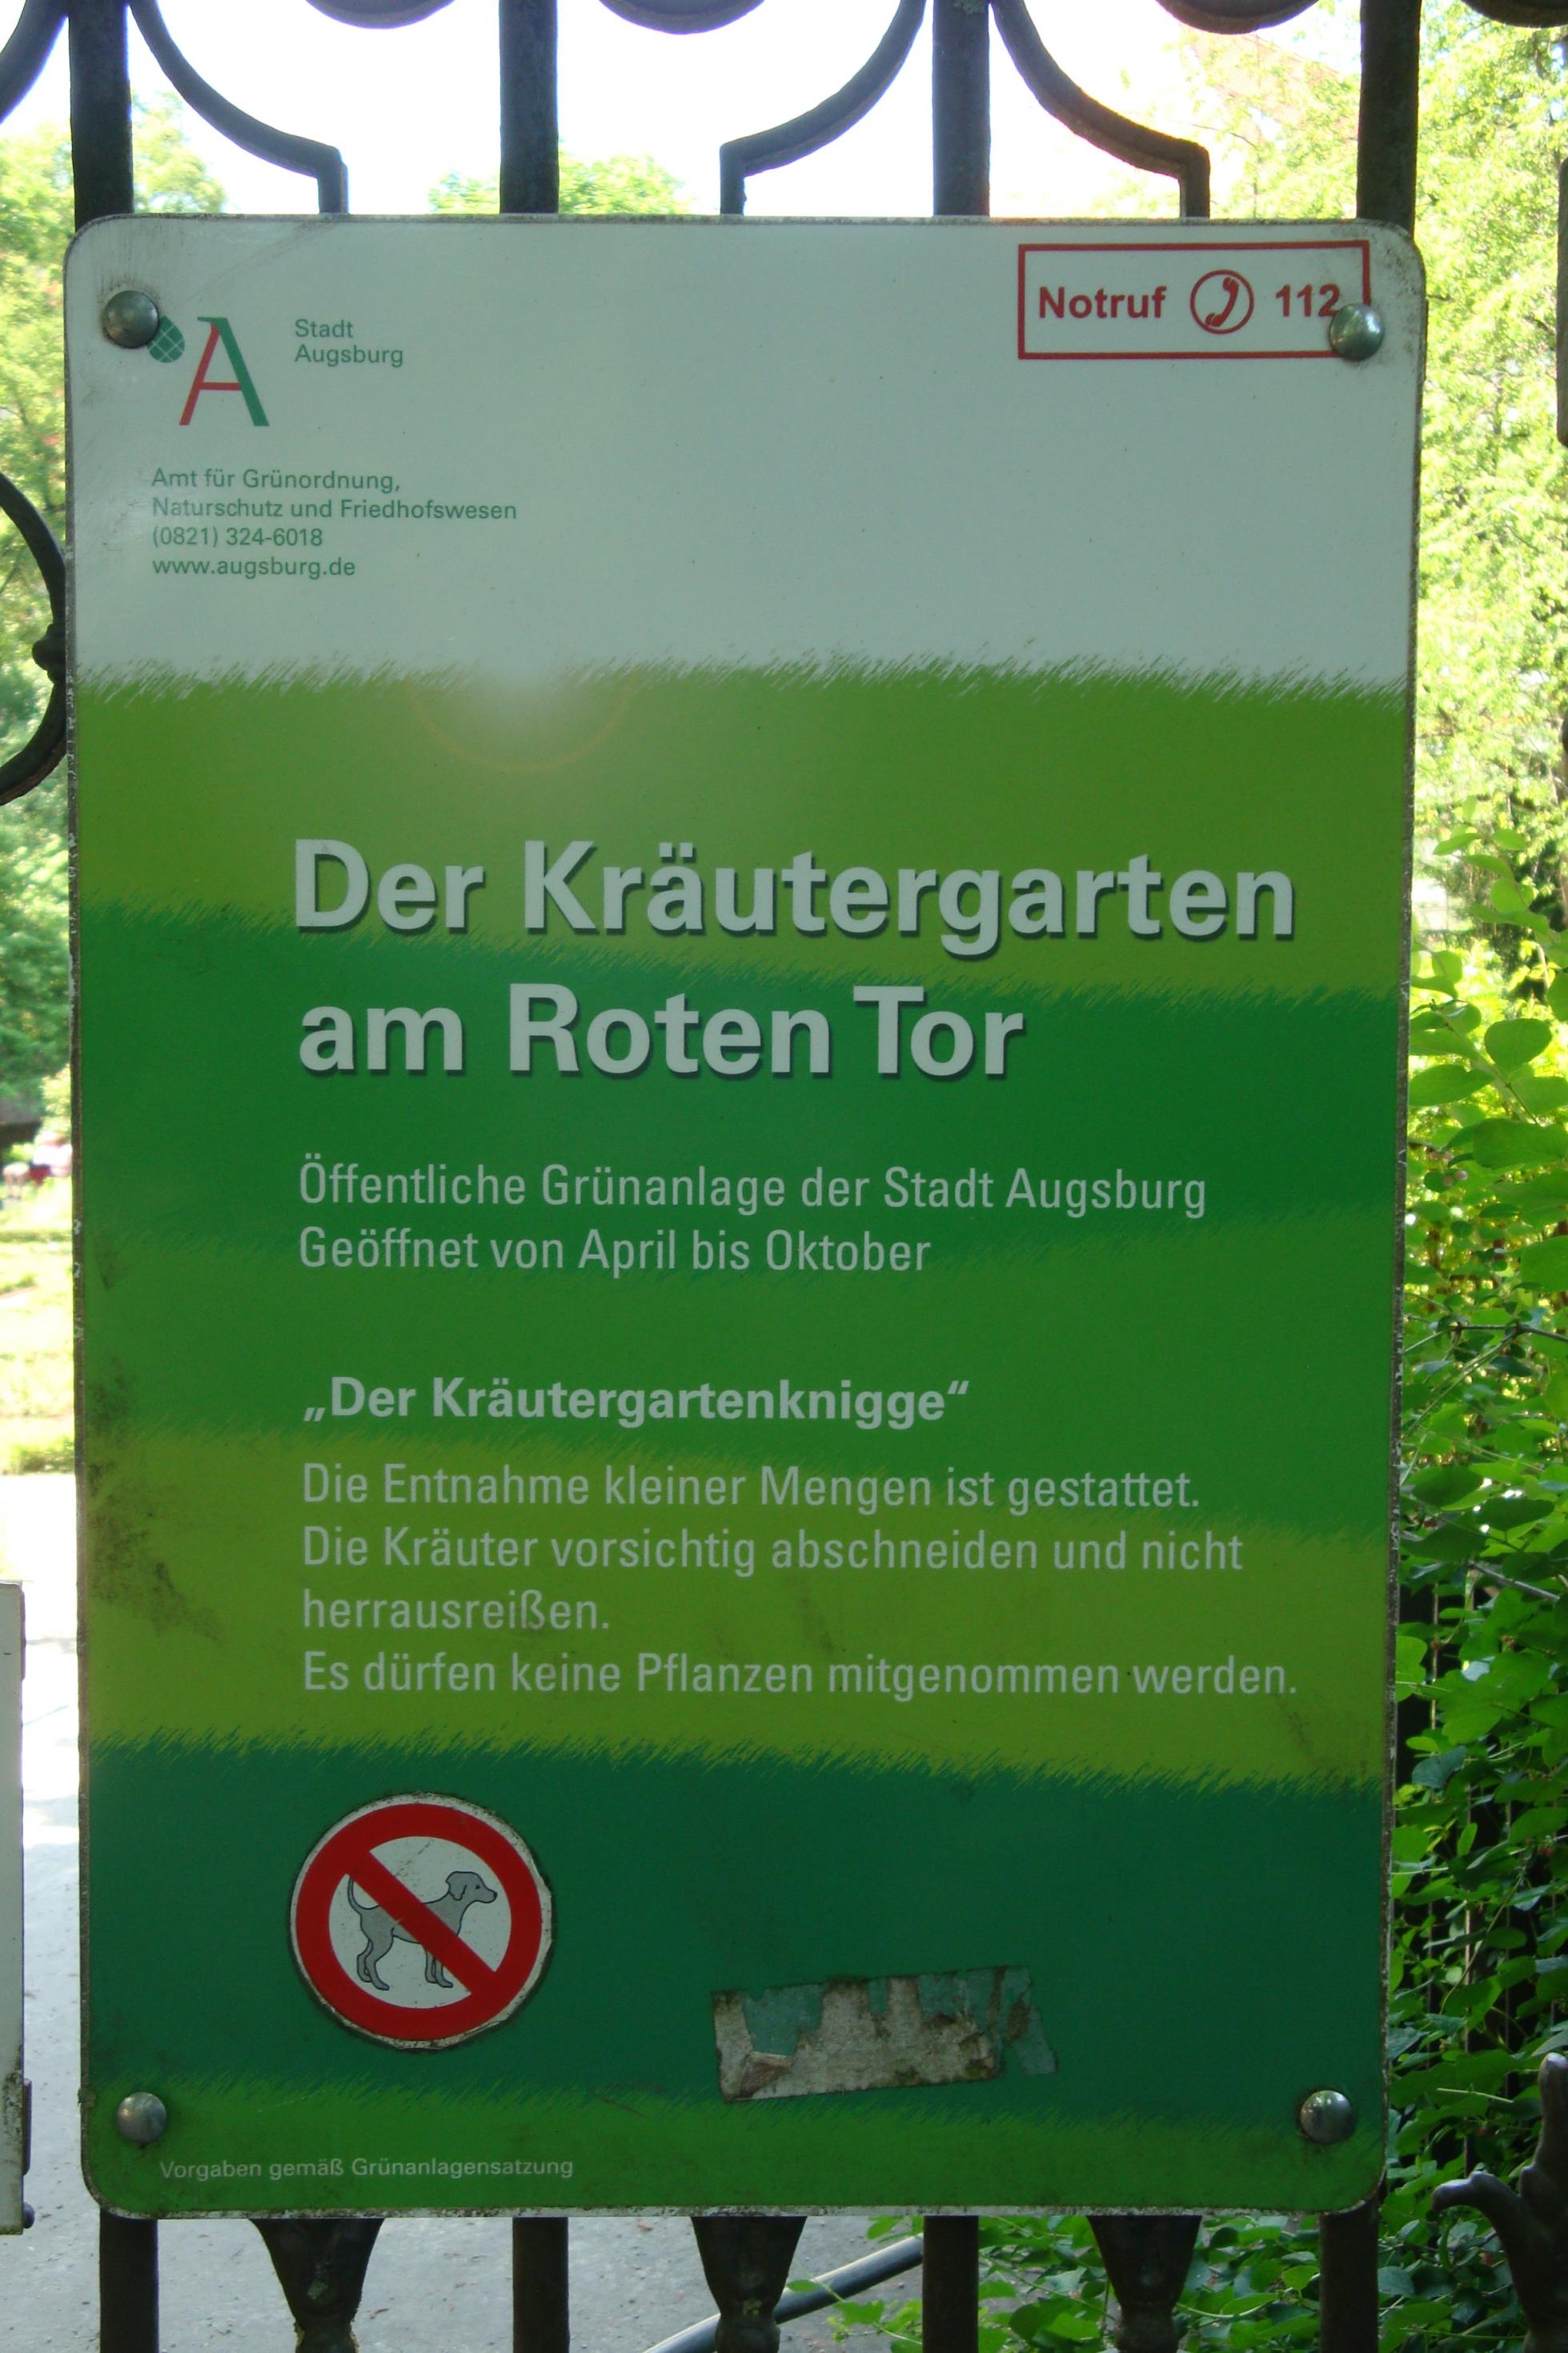 Der „Kräutergarten am Roten Tor“ in Augsburg ist ein Bürgergarten: Jeder darf sich in Maßen am Grün bedienen. Eine Informationstafel informiert über die Nutzungsbedingungen: DIe Entnahme kleiner Mengen ist gestattet, die Kräuter sollen vorsichtig abgeschnitten und nicht herausgerissen werden. Außerdem dürfen keine Pflanzen mitgenommen werden. (Juni 2021)